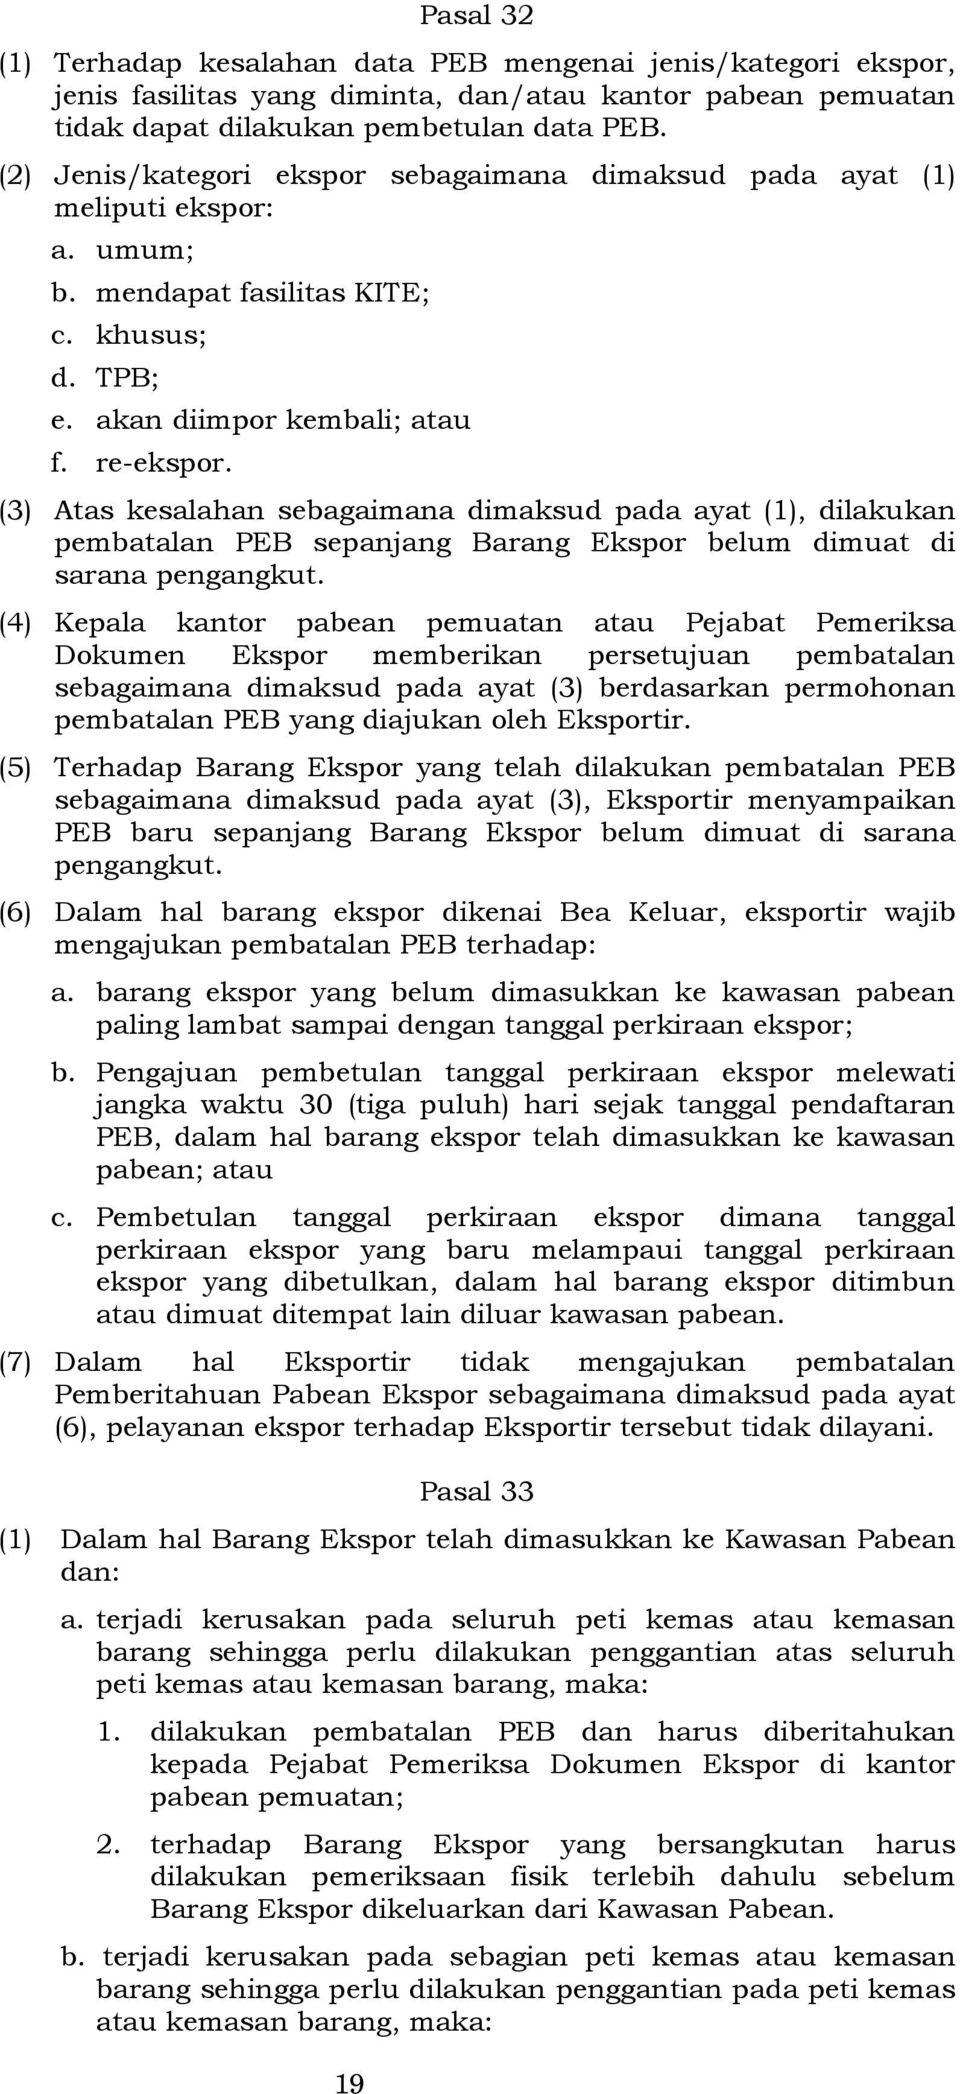 (3) Atas kesalahan sebagaimana dimaksud pada ayat (1), dilakukan pembatalan PEB sepanjang Barang Ekspor belum dimuat di sarana pengangkut.